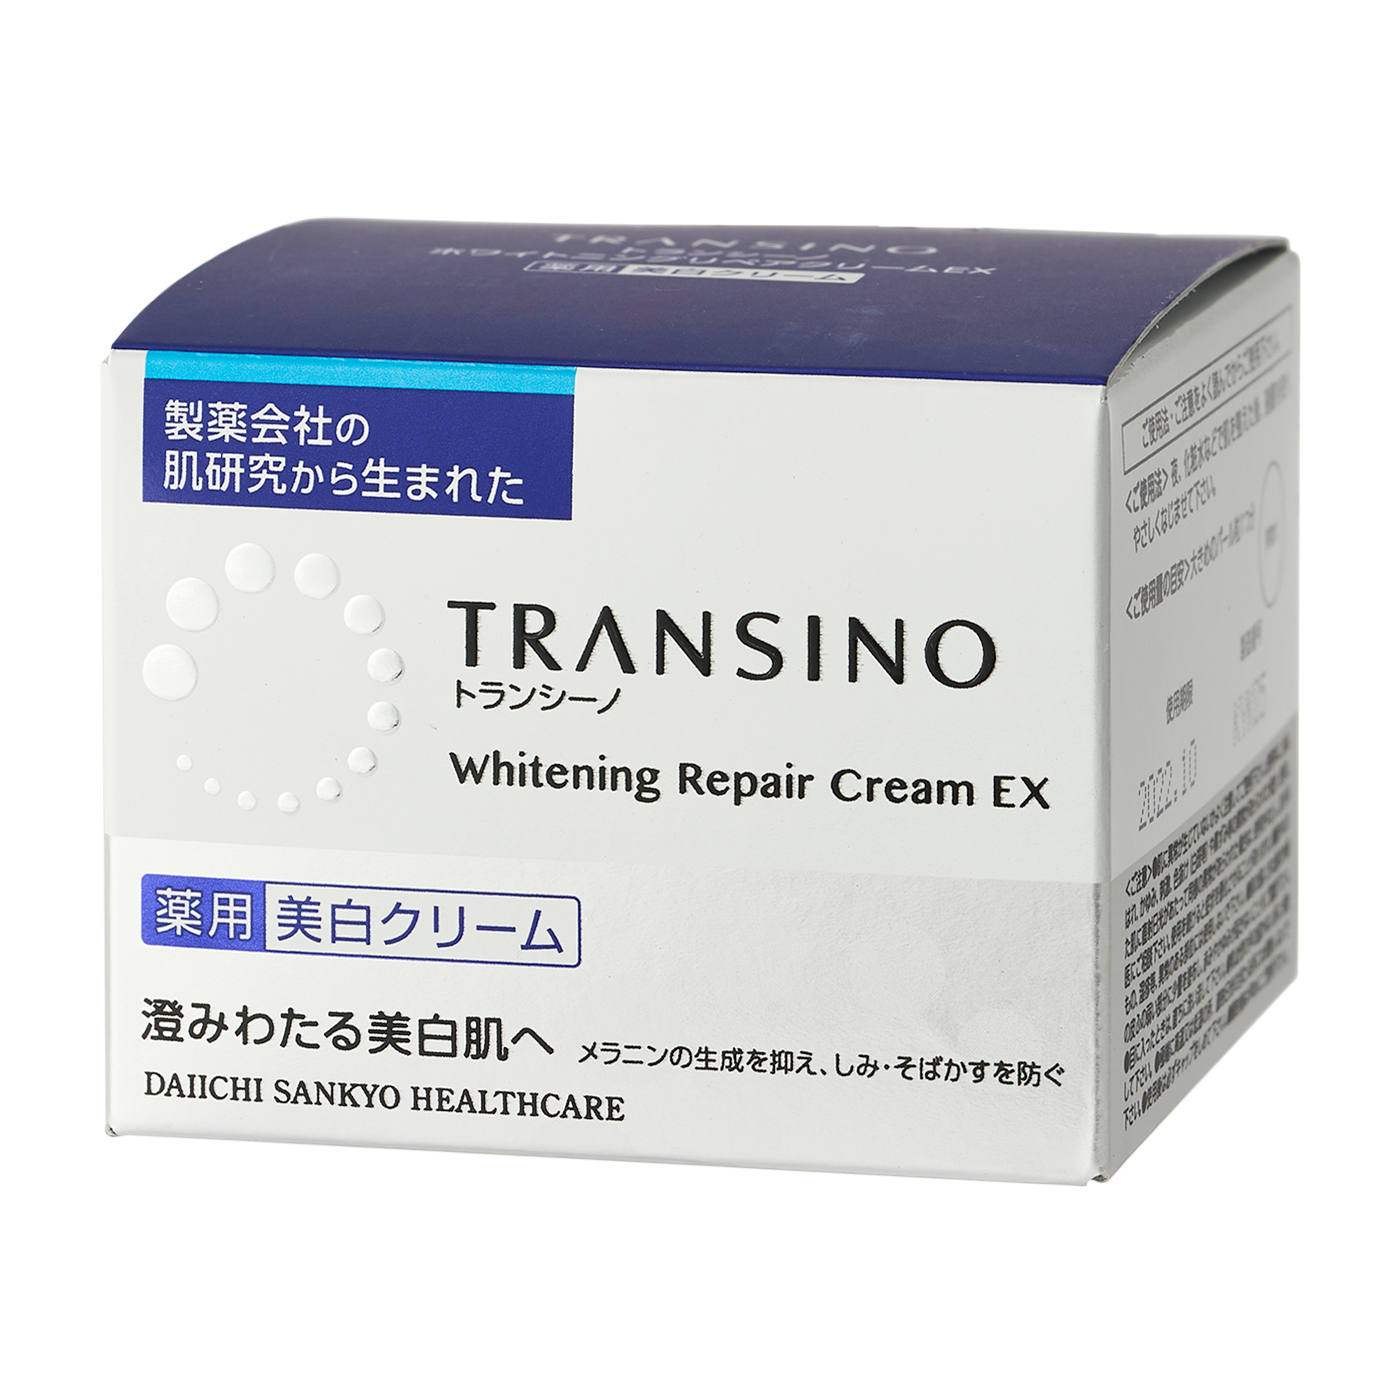 新色登場 (6530) 35g トランシーノ薬用ホワイトニングリペアクリームEX 